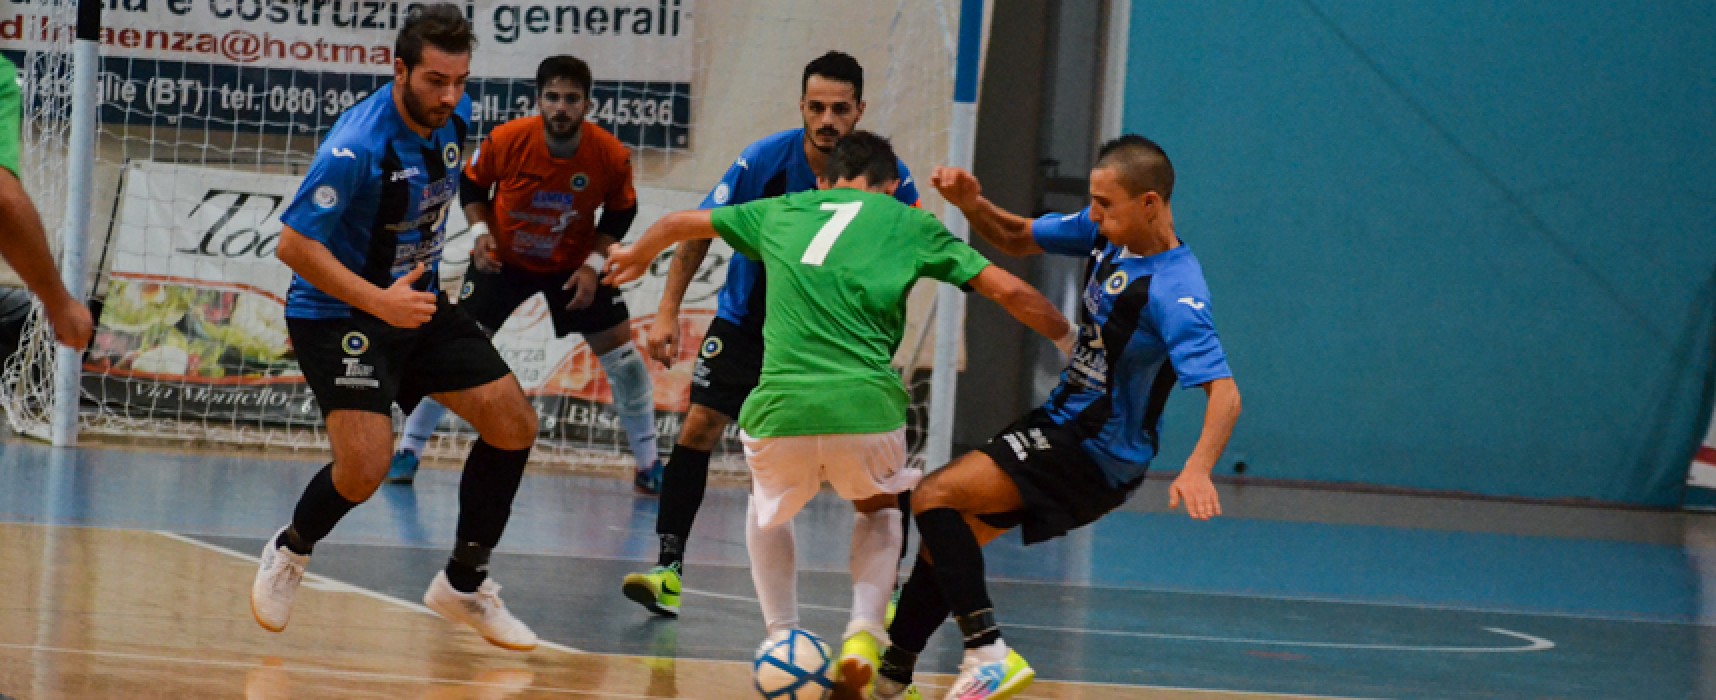 FINALE: Futsal Barletta – Futsal Bisceglie 0-0